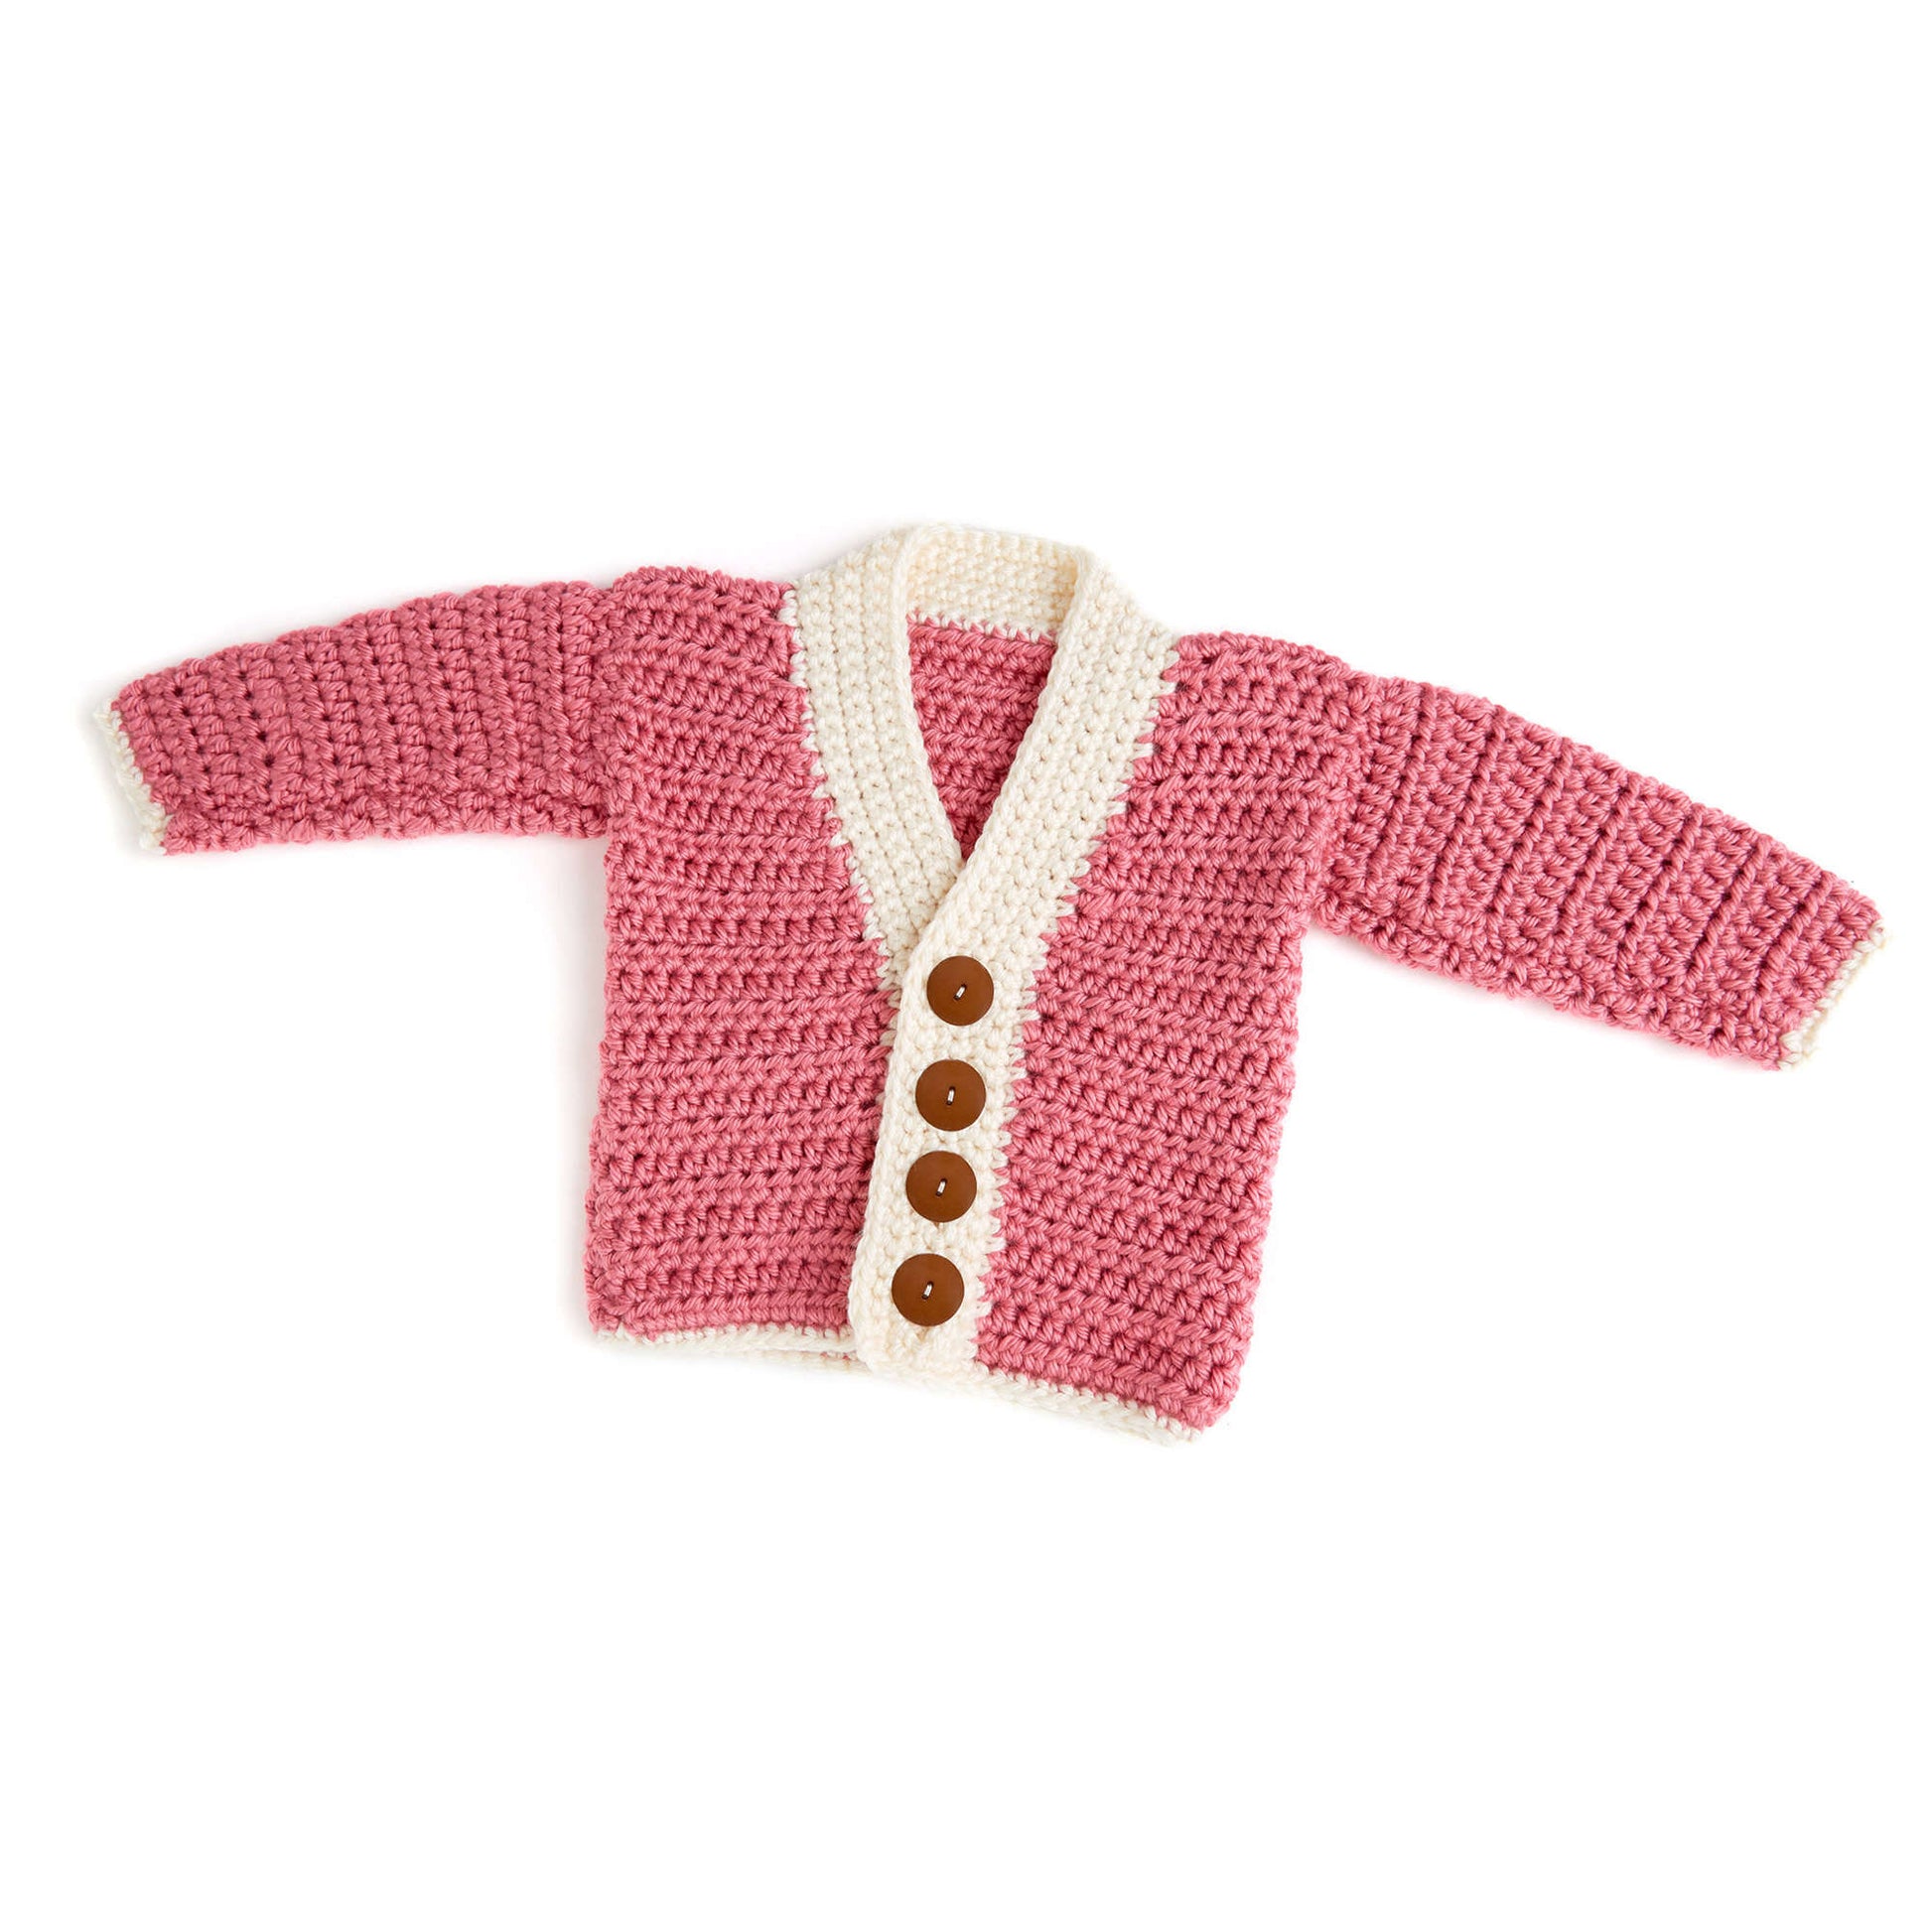 Free Red Heart Crochet Cutie Baby Cardigan Pattern